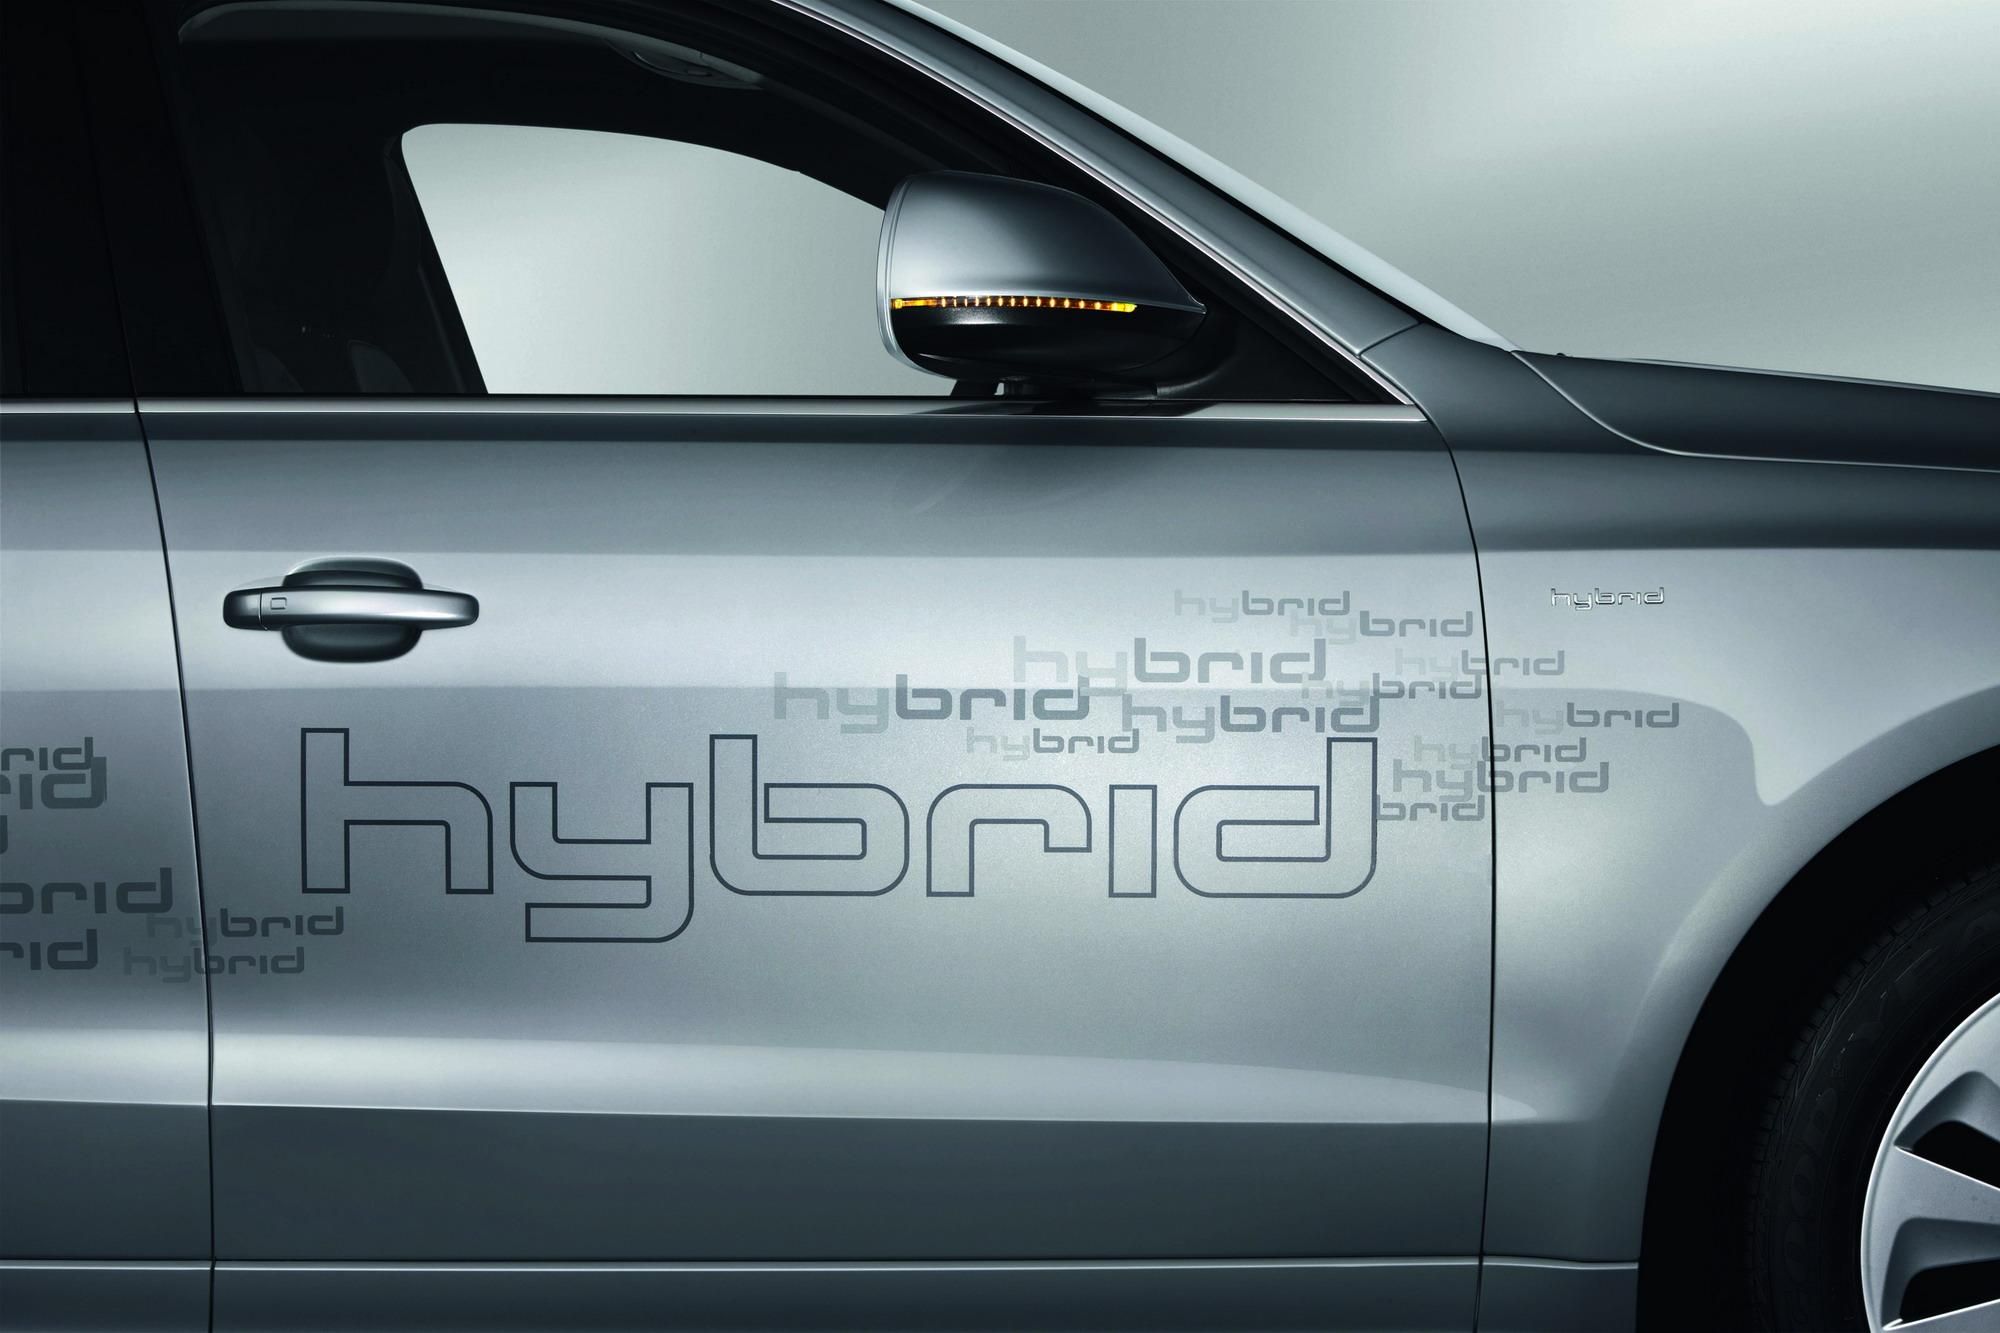 2011 Audi Q5 Hybrid Quattro